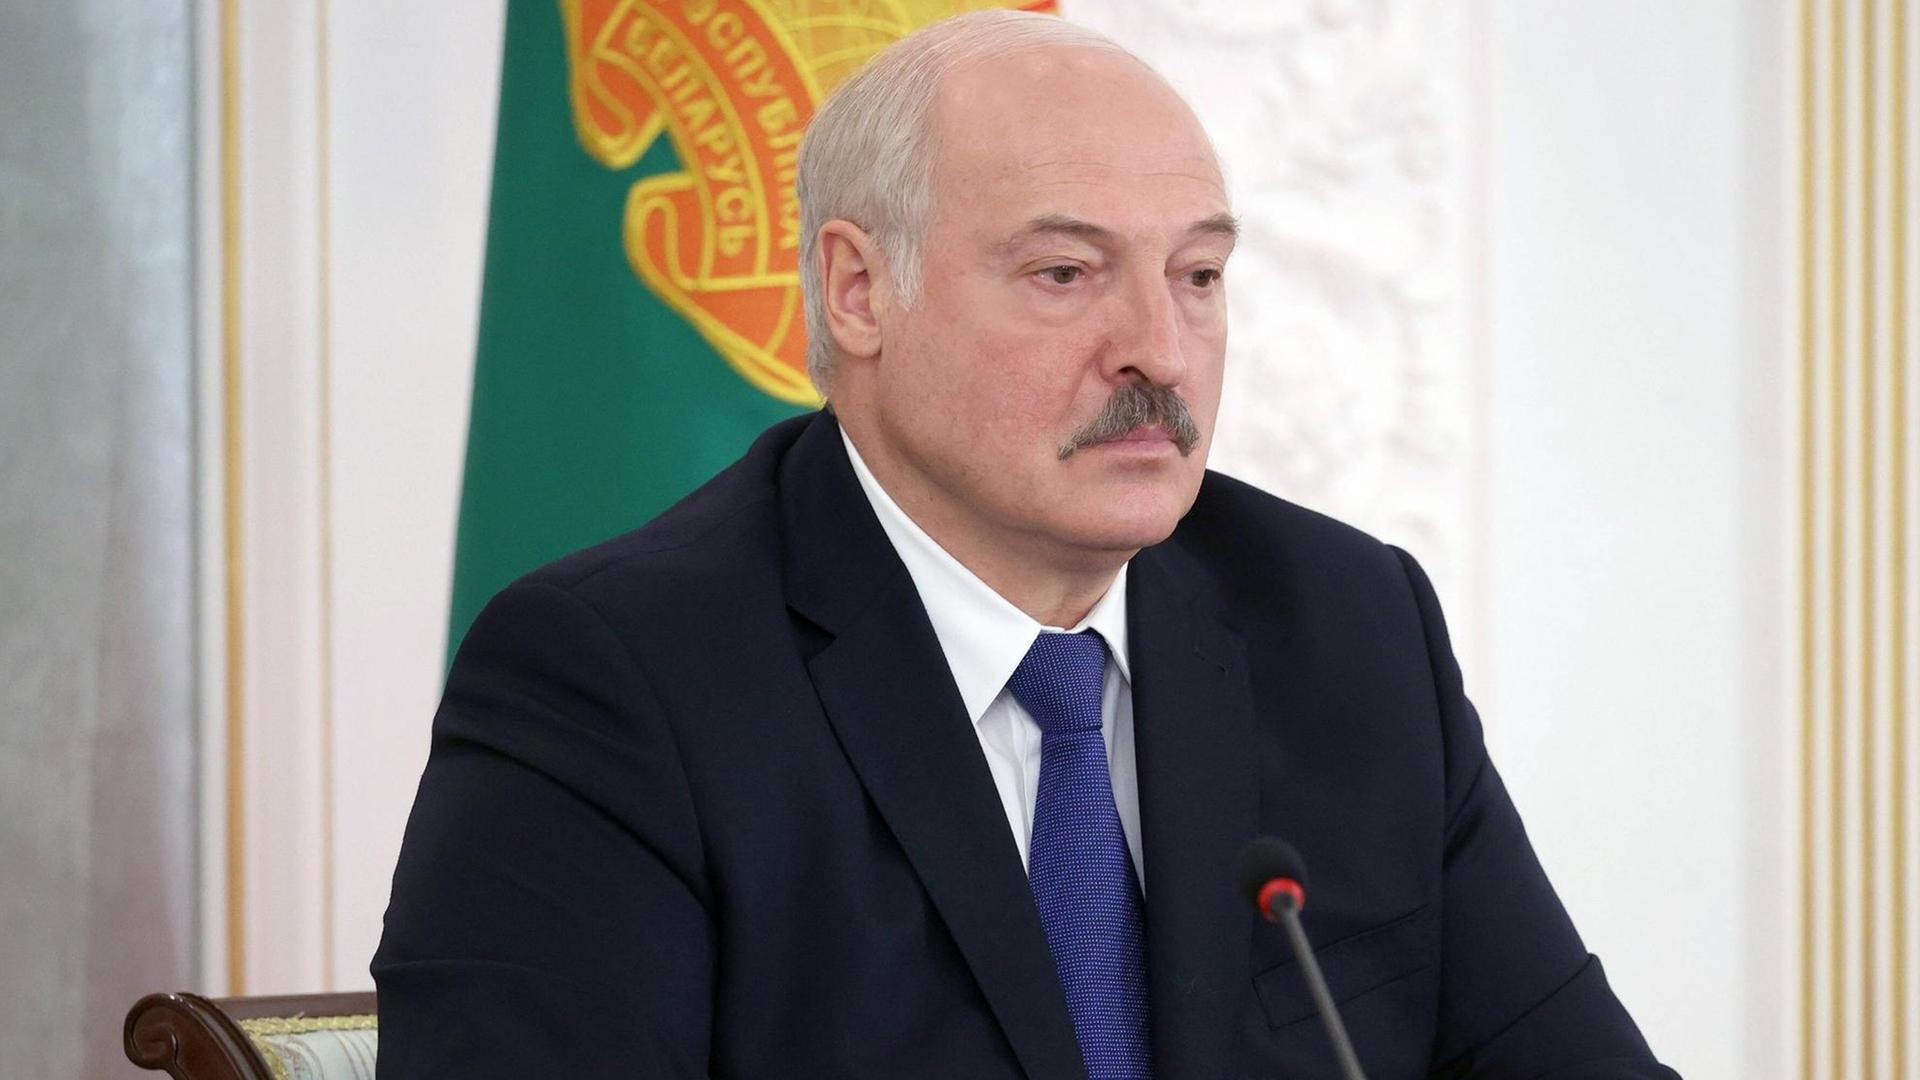 Alexander Lukaschenko im Porträt